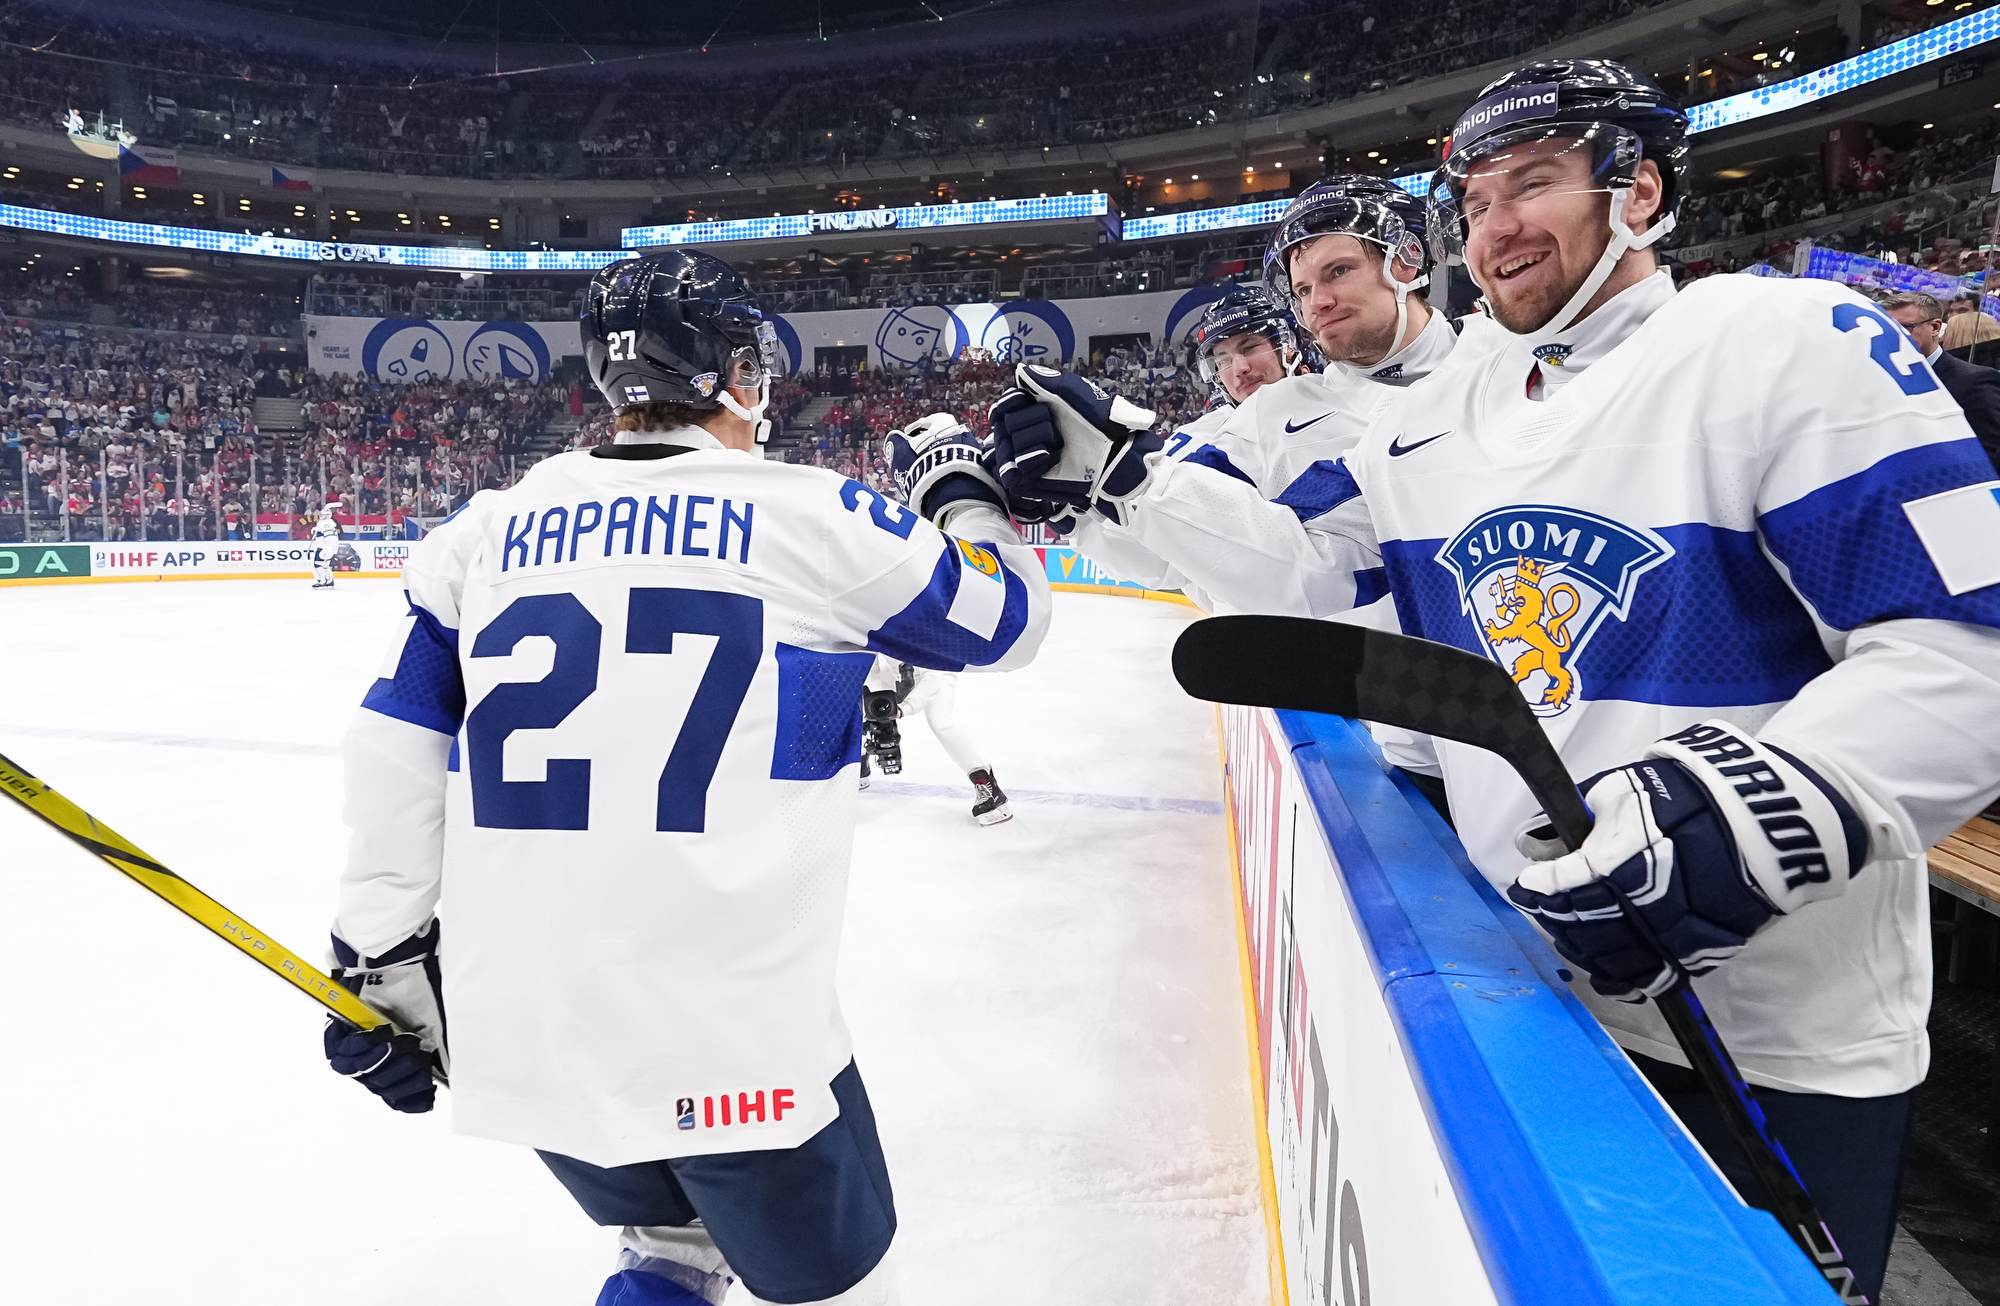 IIHF – Finns knock off Norway